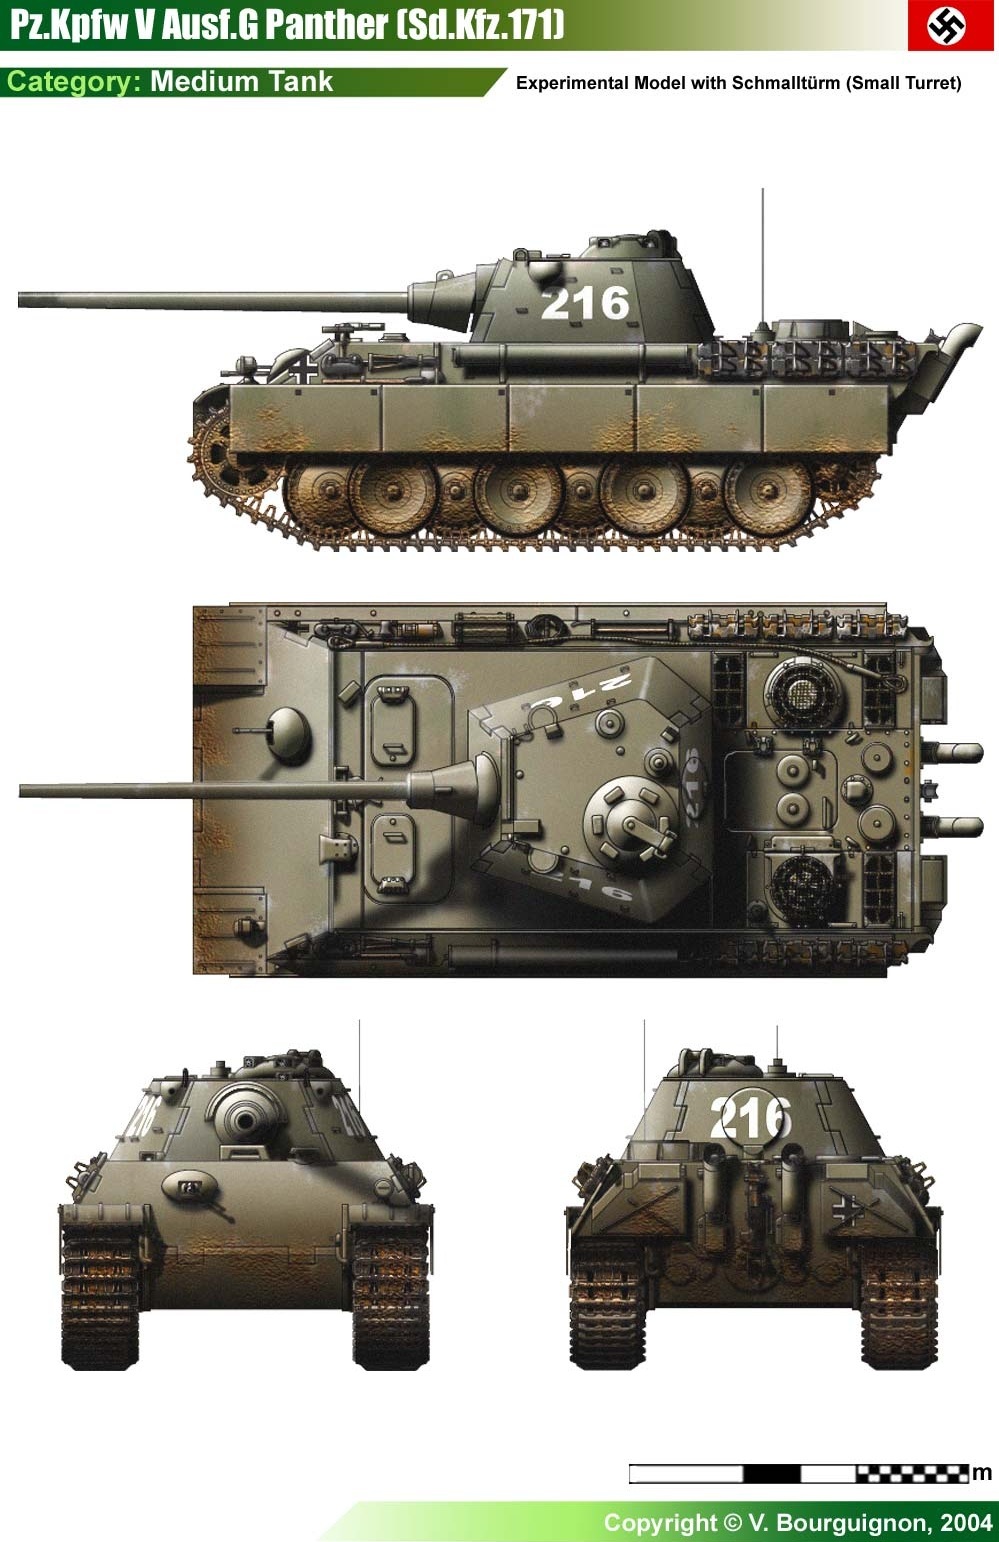 PzKpfw V Ausf G с башней «Шмальтурм» и орудием KwK 42 с дульным тормозом.